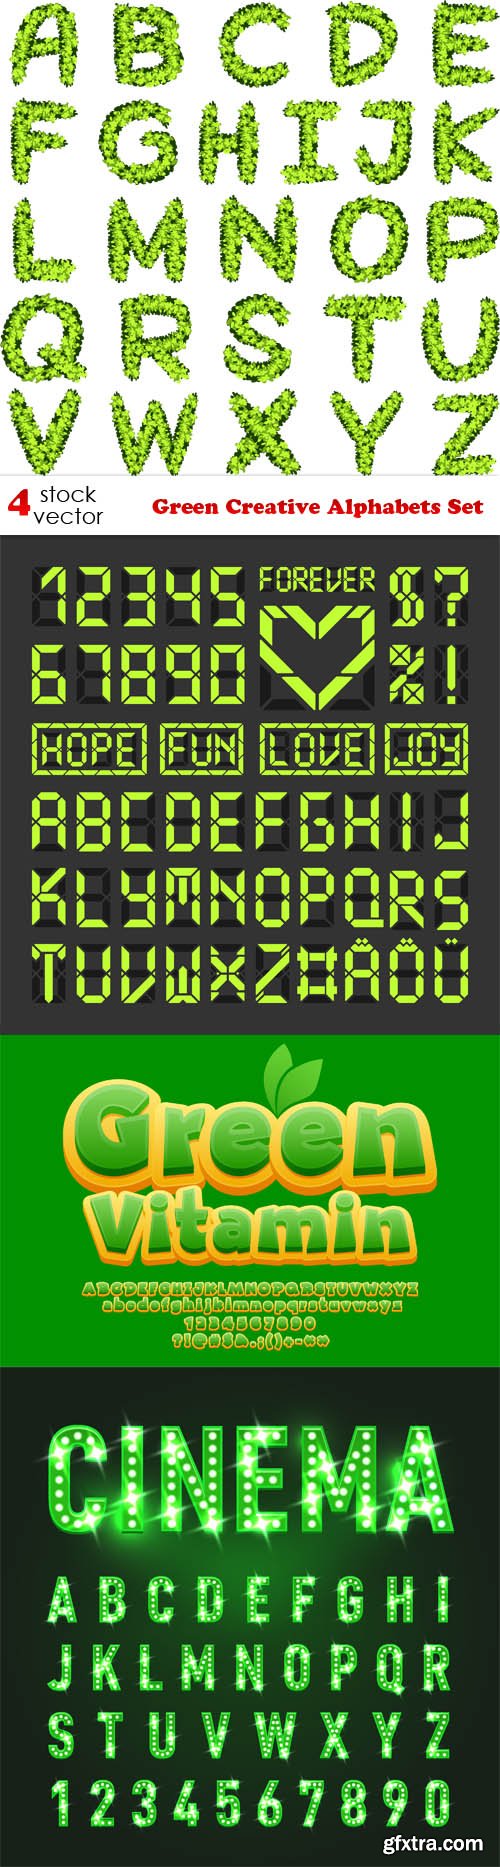 Vectors - Green Creative Alphabets Set